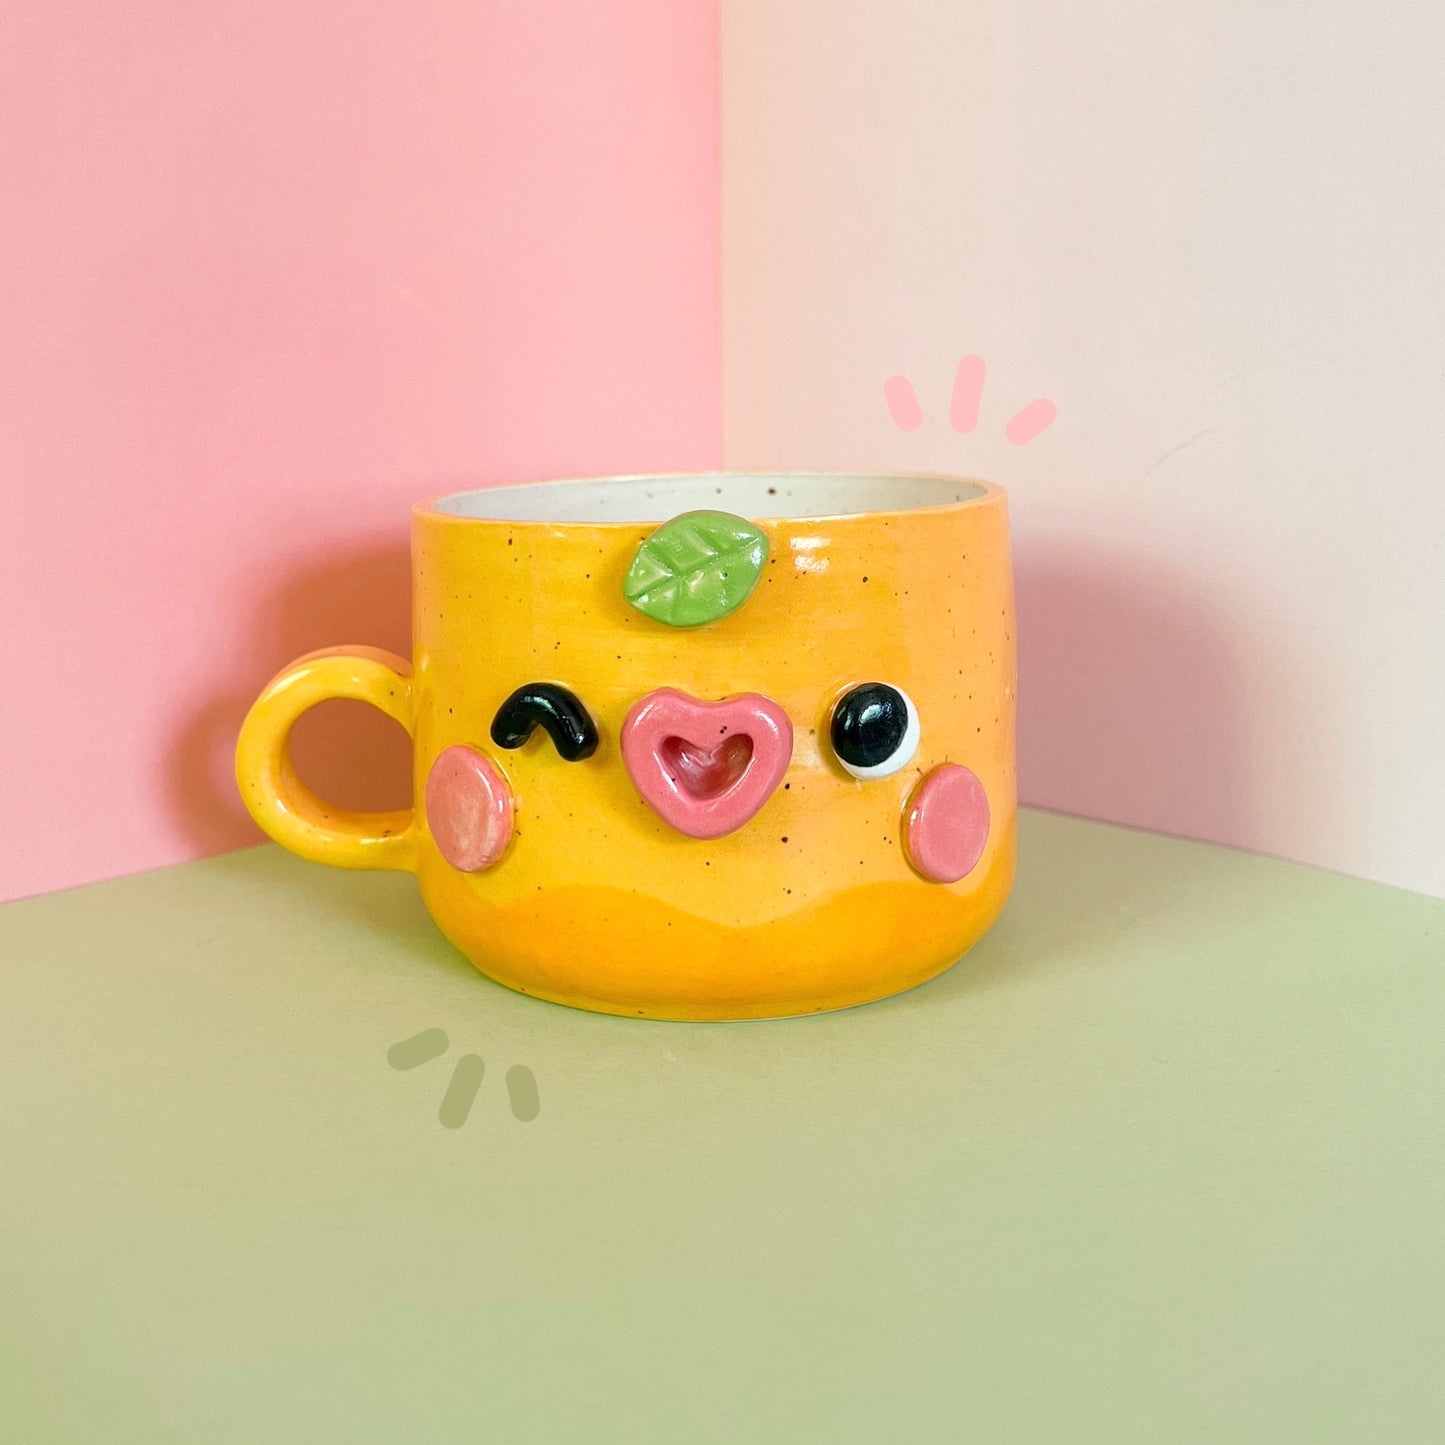 Lemon mug